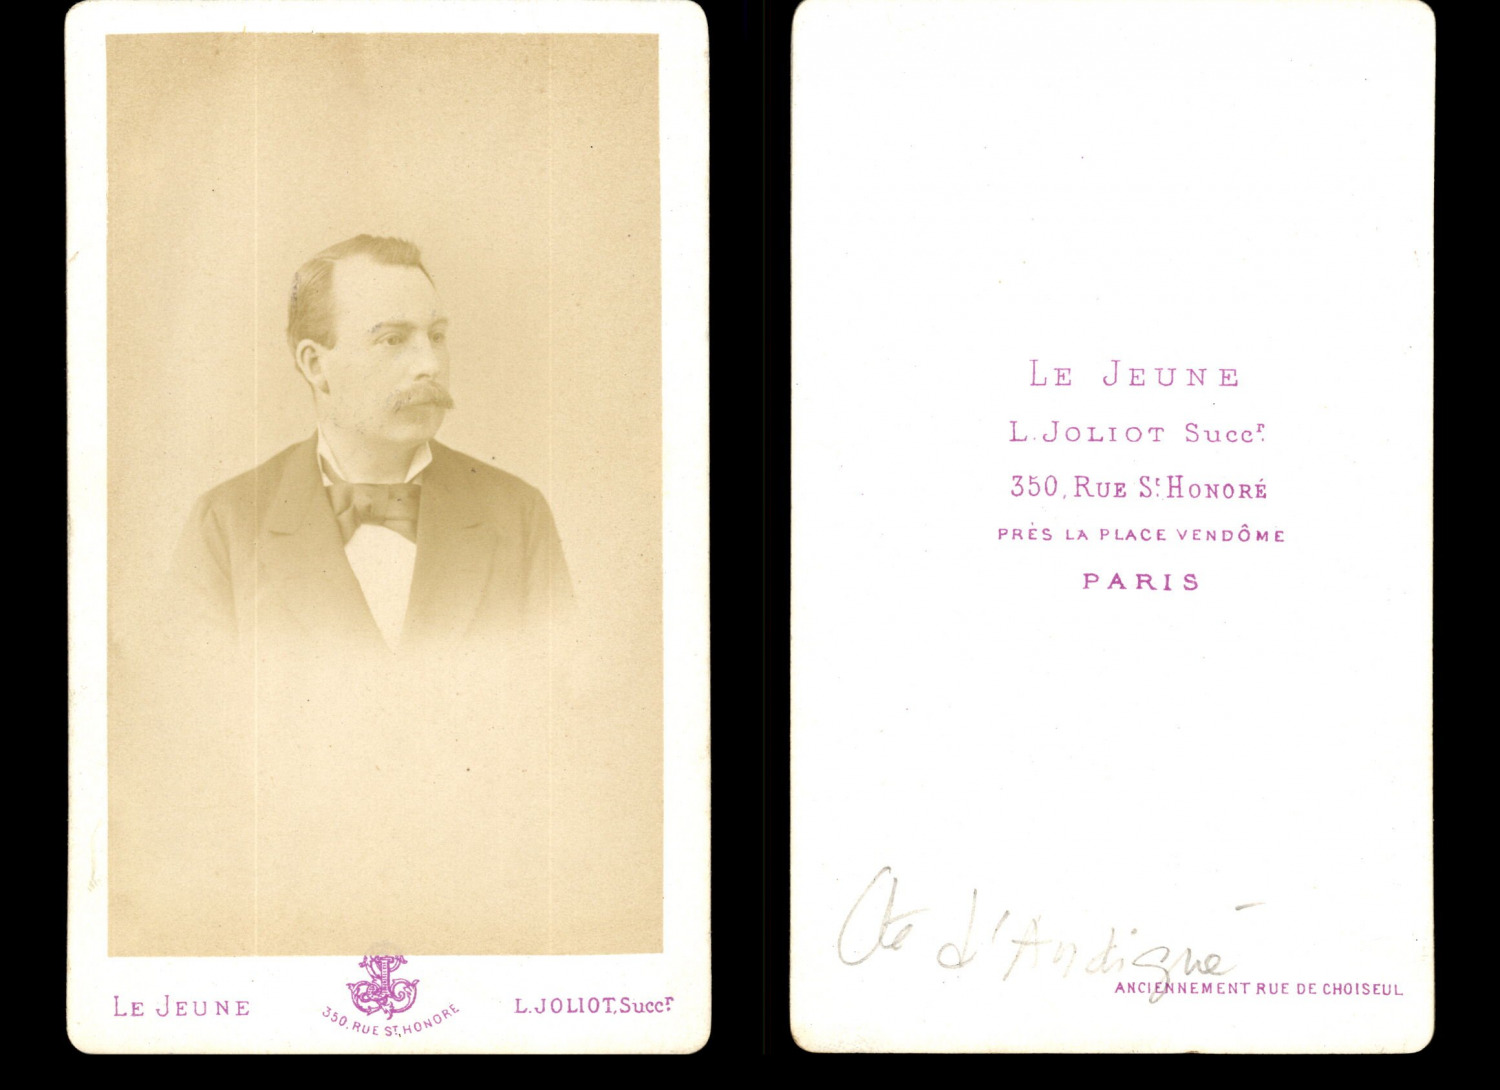 Le Jeune, Paris, Comte d'Andigné Vintage Albumen Print CDV.